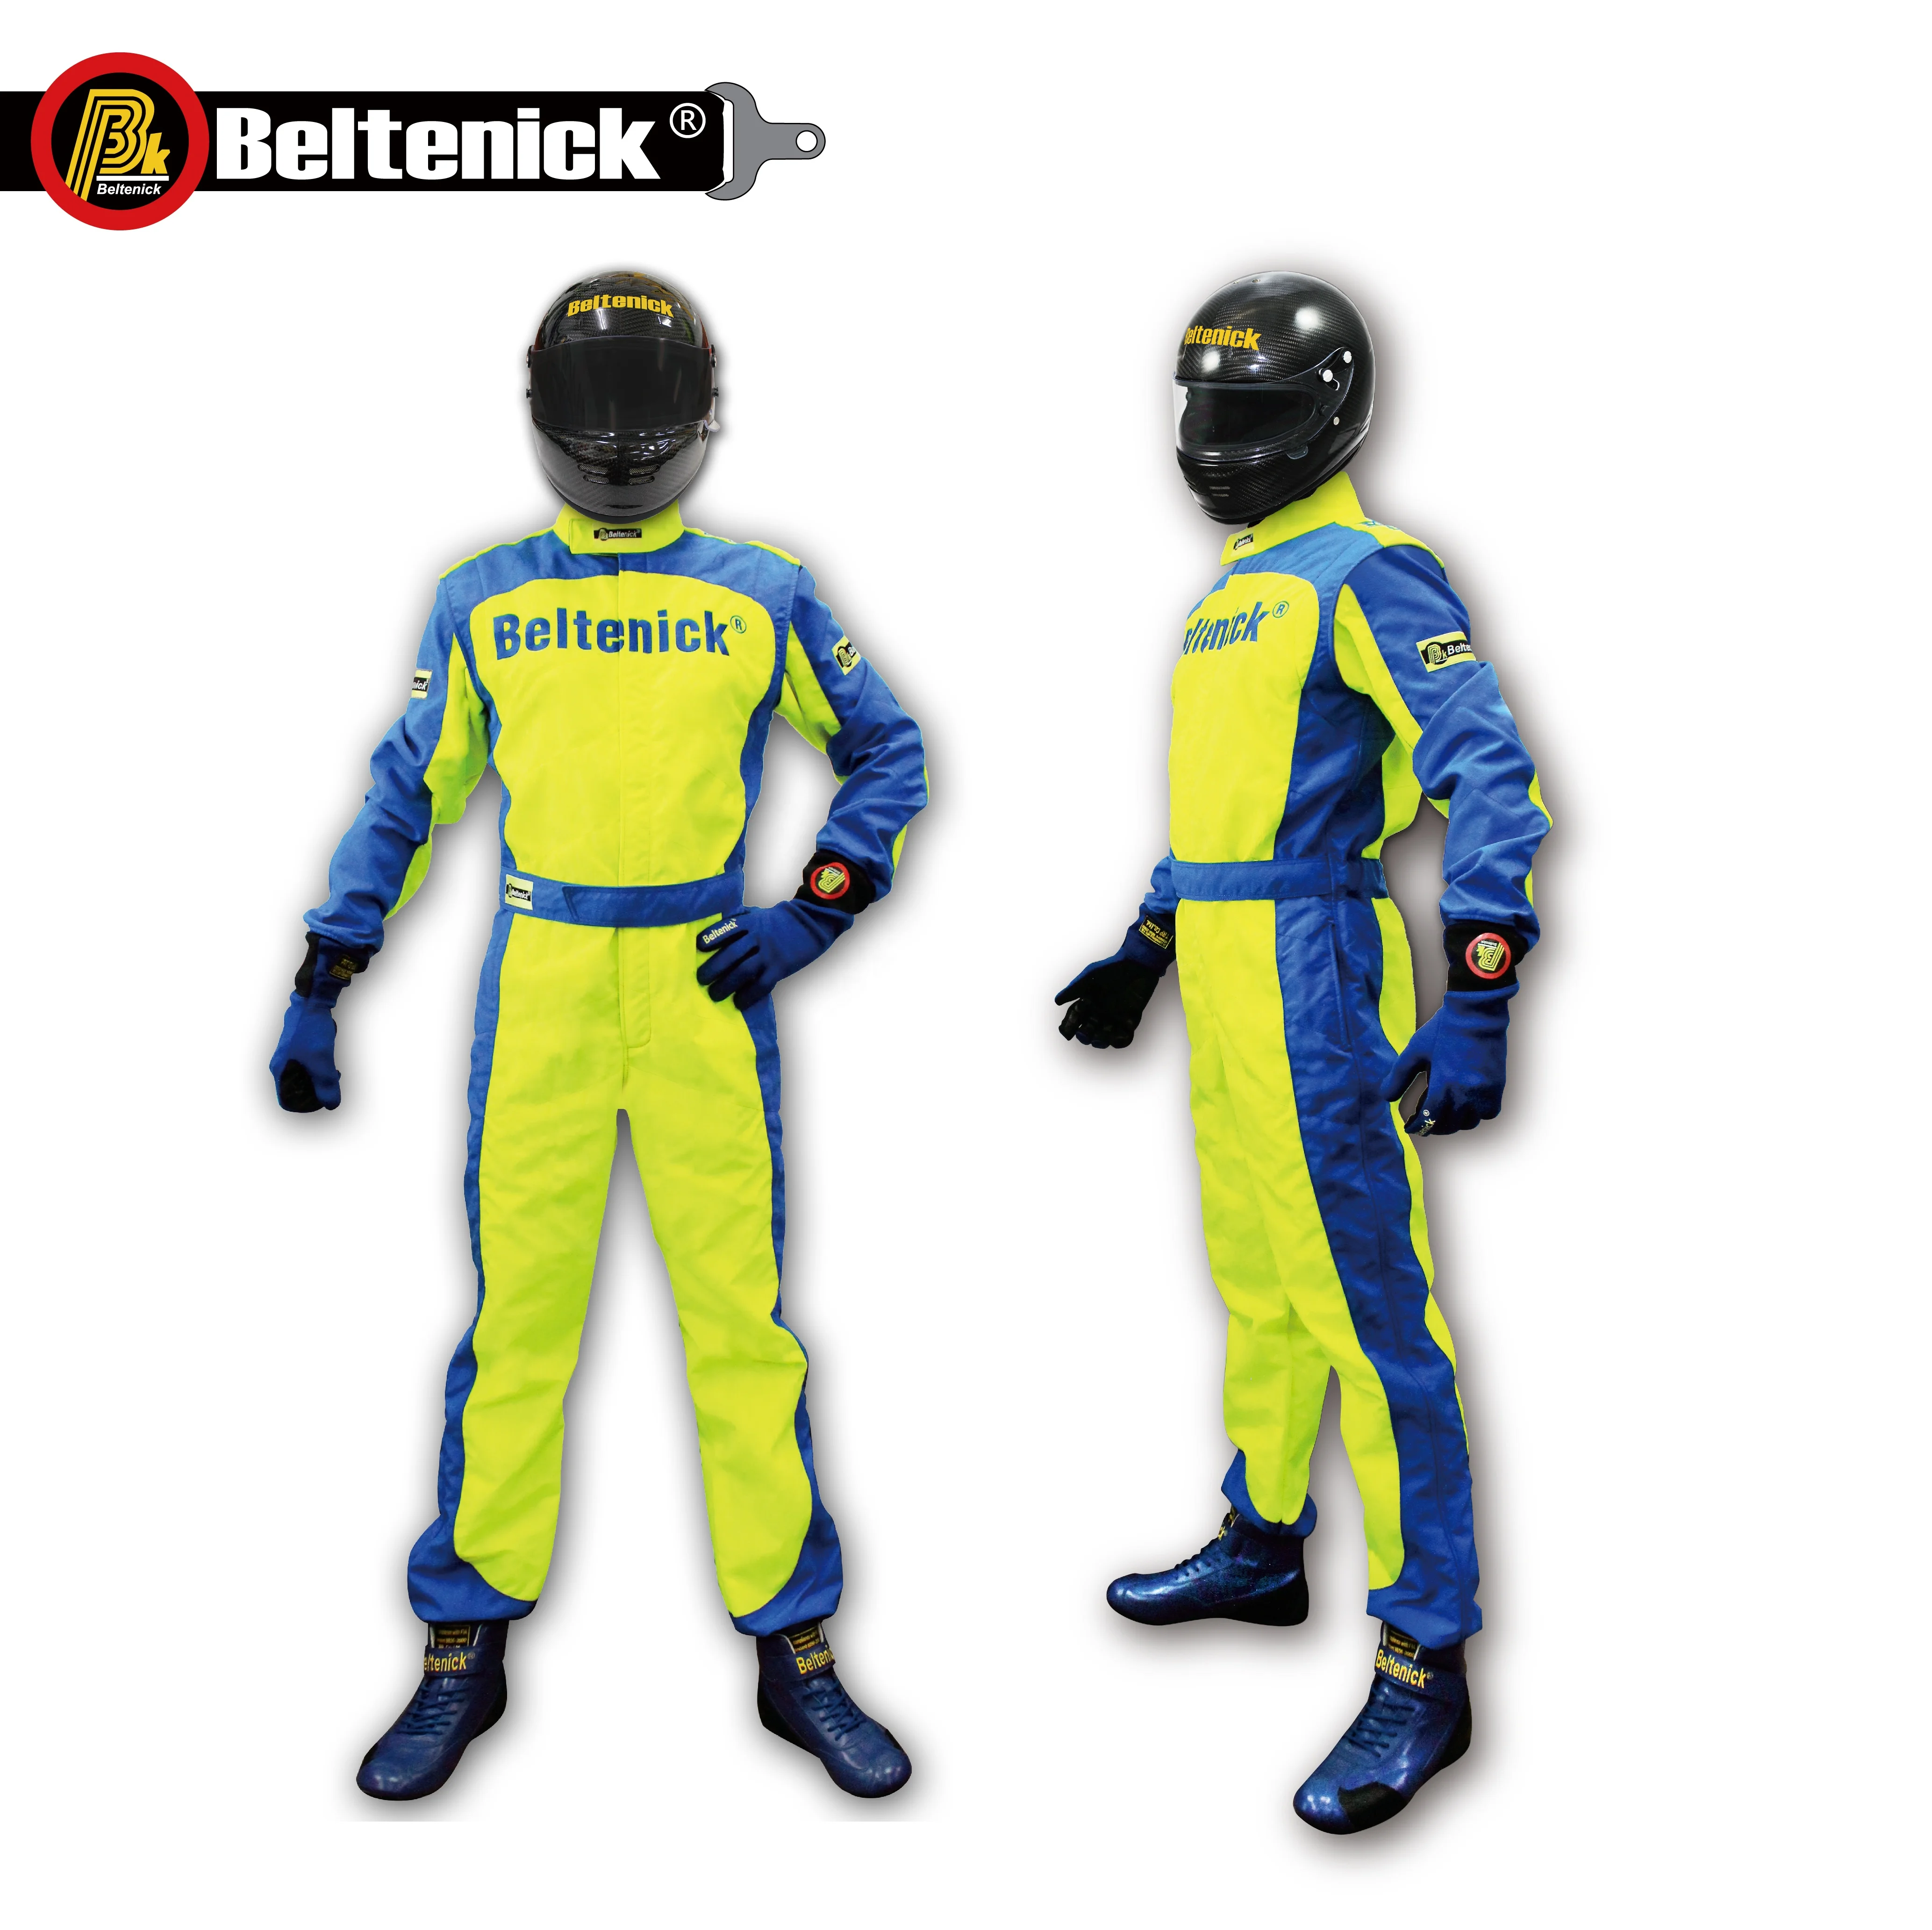 Go-Kart Race Suit CIK/FIA Level 2 